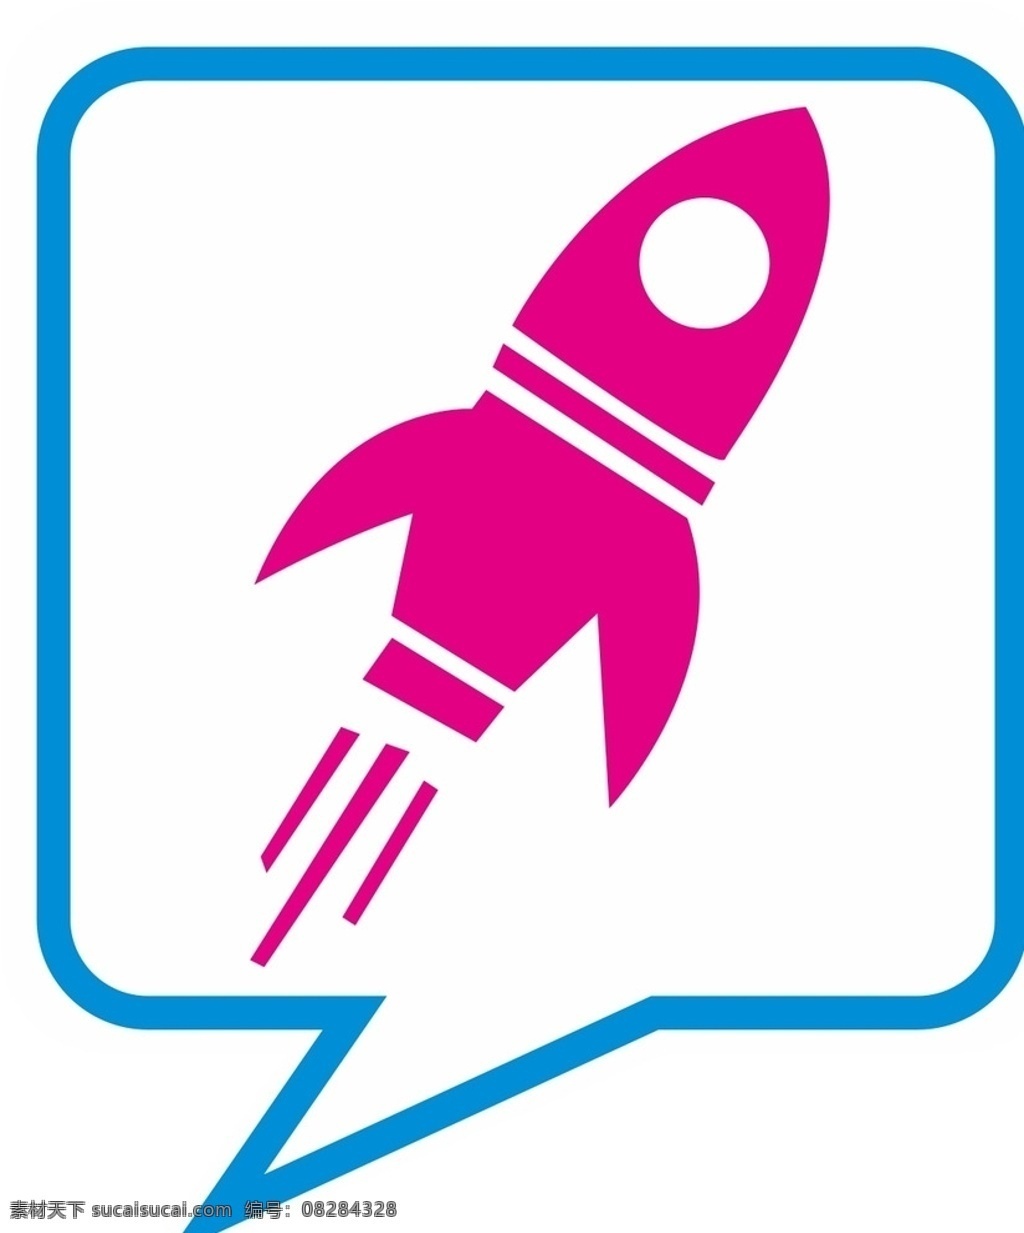 火箭小图标 小图标 小火箭 logo icon 标识 标志设计 手机图标 扁平化图标 线性图标 矢量图标 可爱 火箭 标识标志 图标 矢量 火 箭 矢量火箭 设计元素 创意图标 logo设计